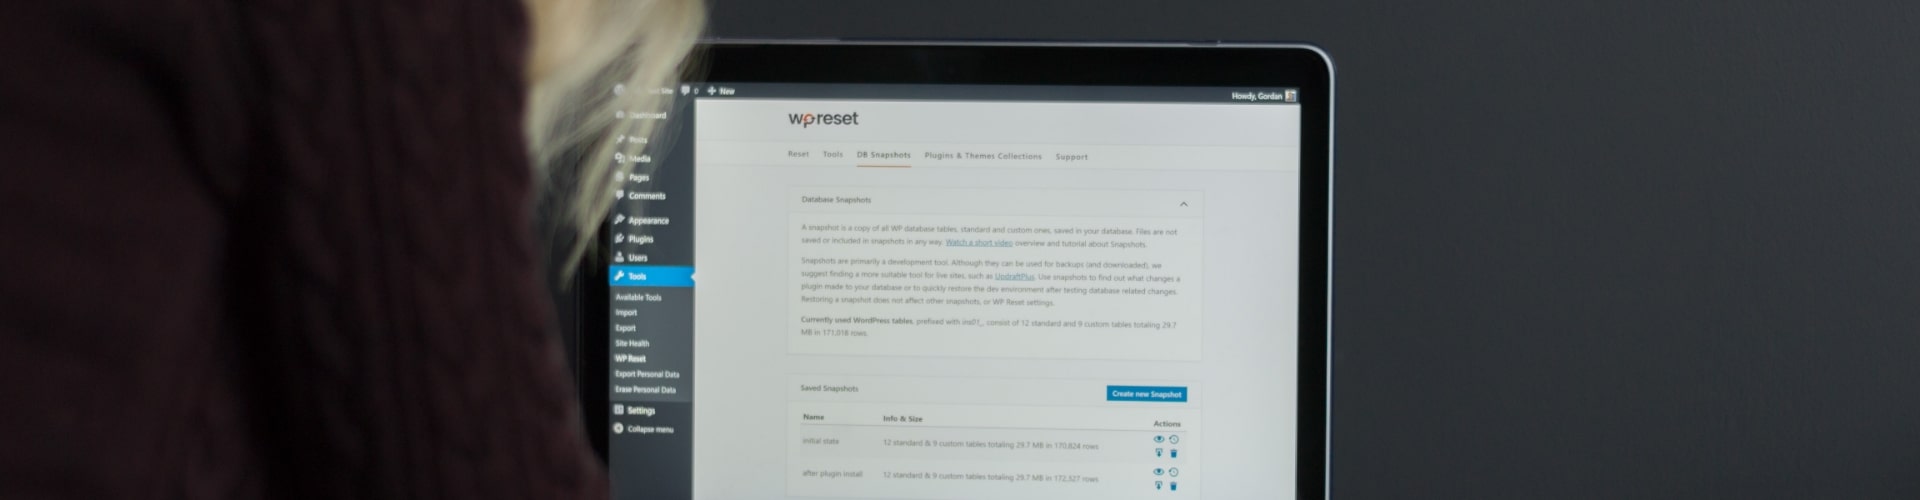 Wordpress udvikling hos some and web i københavn